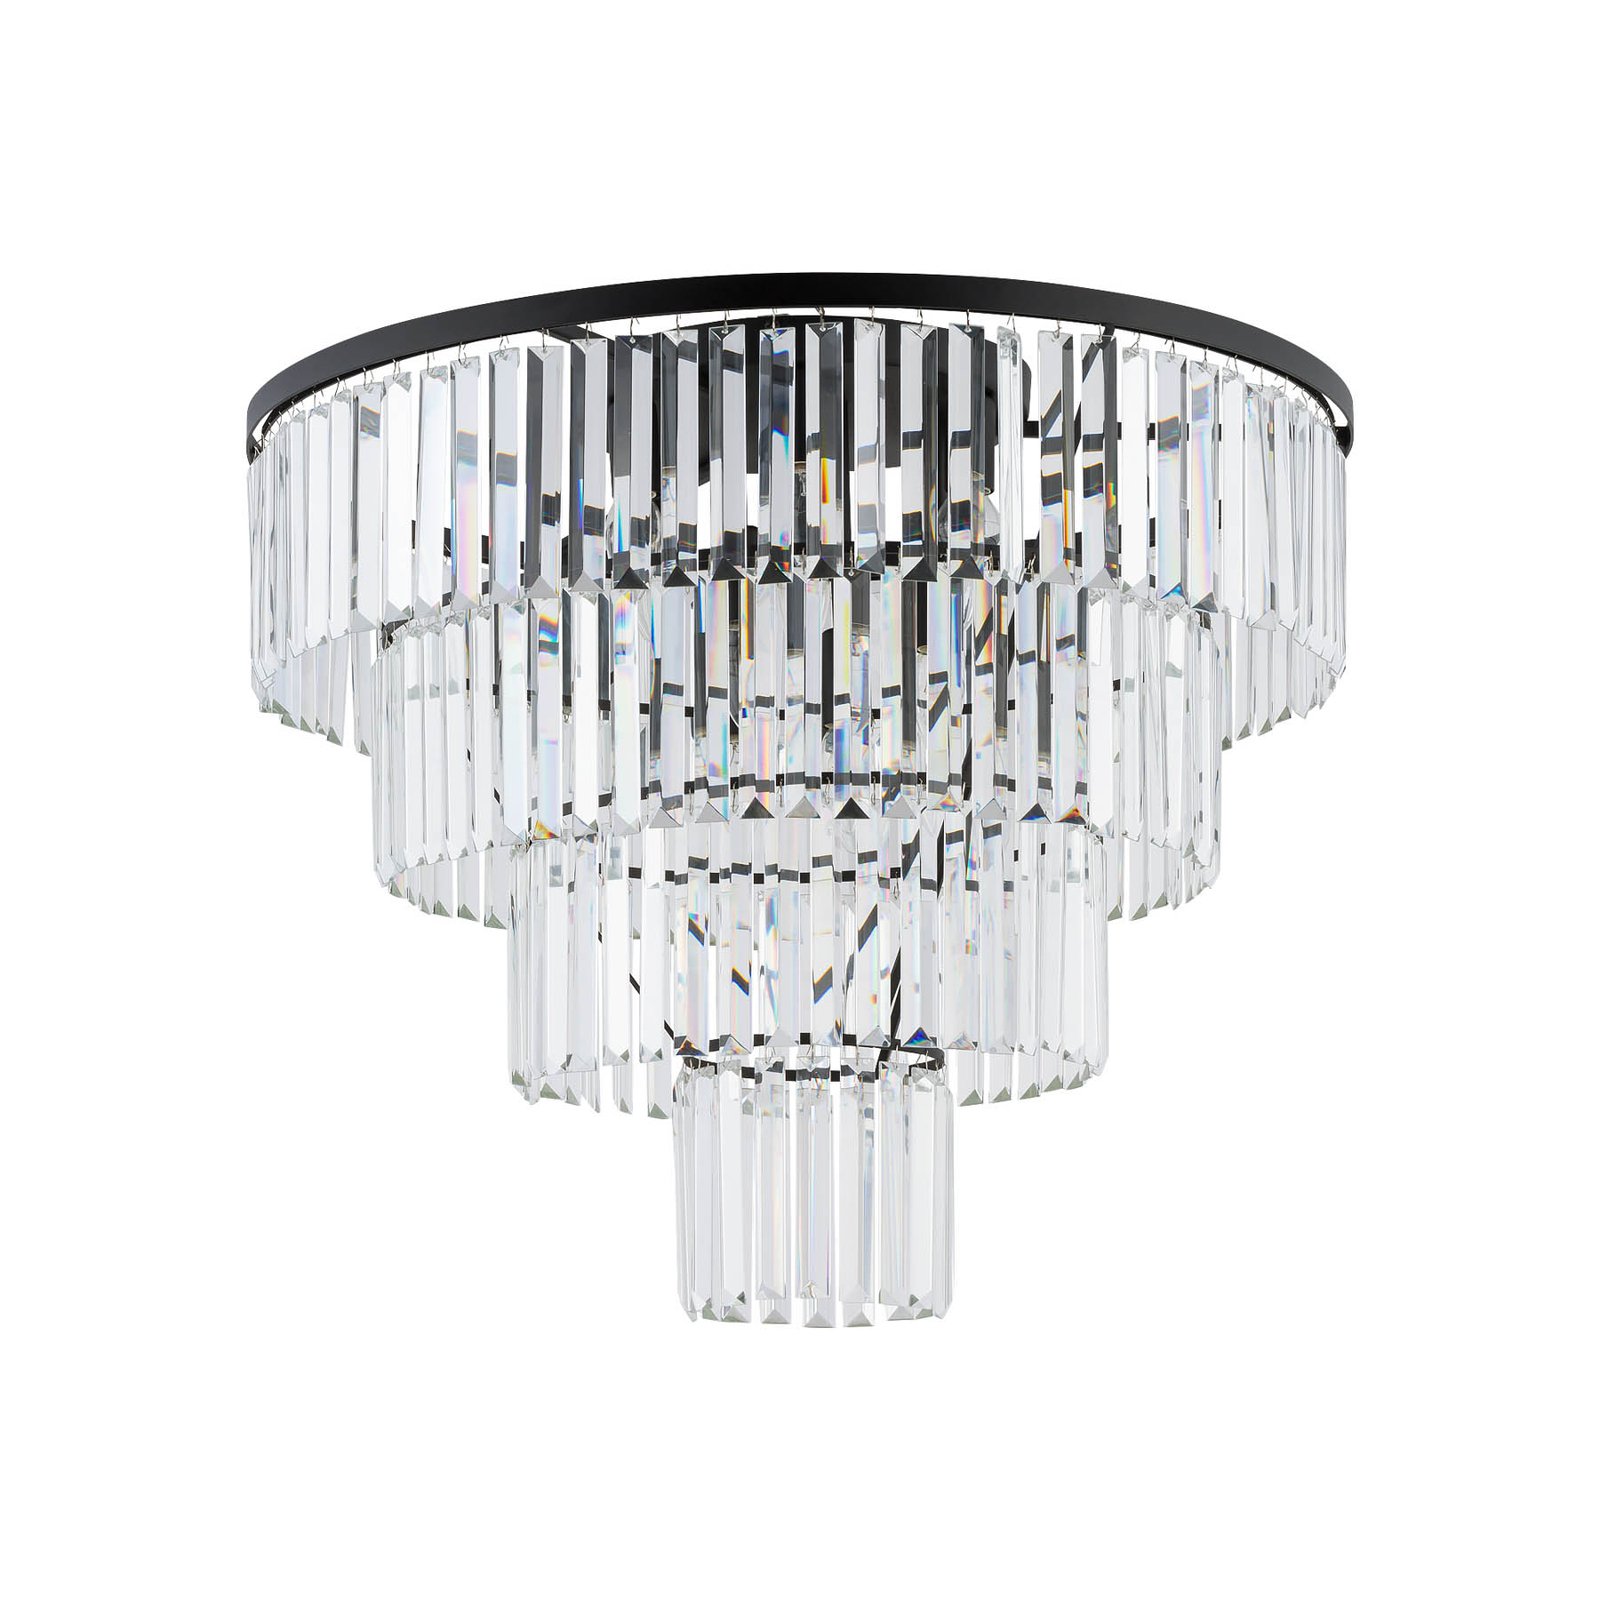 Cristal loftslampe, transparent/sort, Ø 71cm